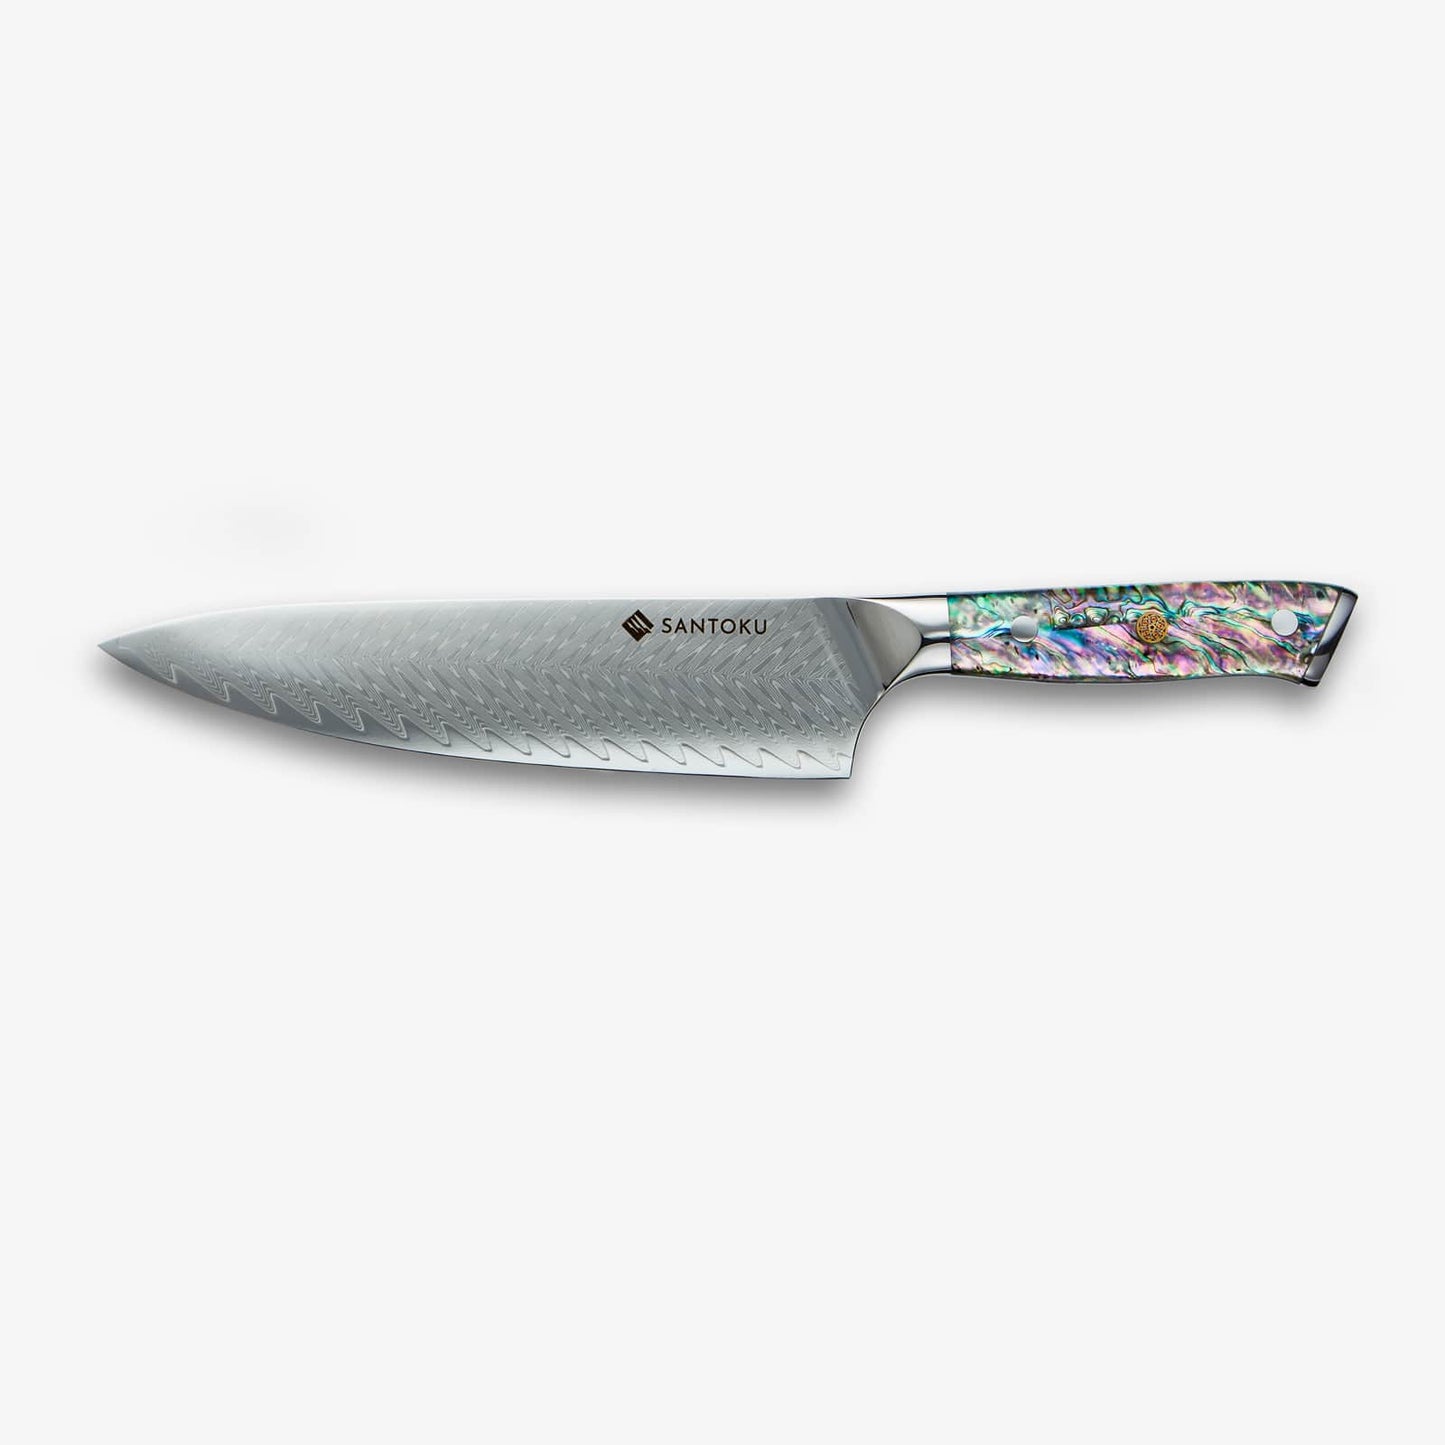 Chikashi (ちかし) 8 tum kockkniv